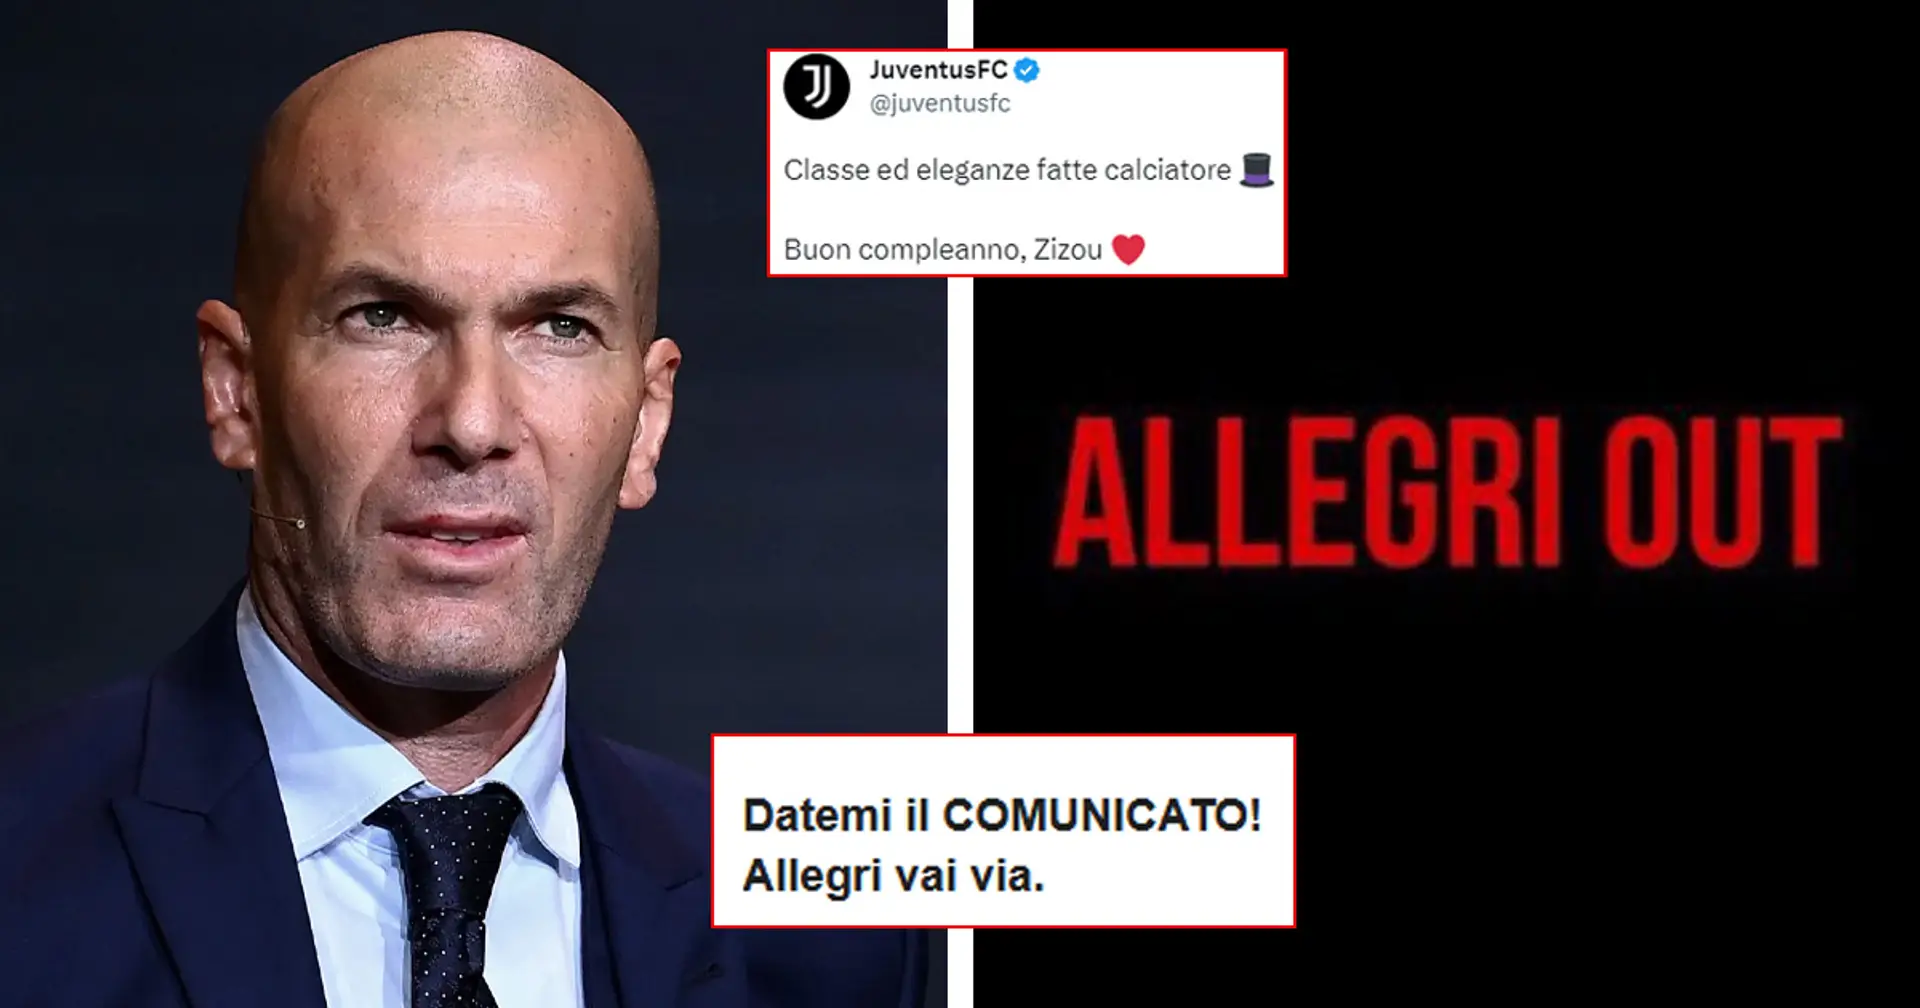 "Salvaci tu!": la Juve fa gli auguri a Zidane, sui social scoppia di nuovo l'hashtag #AllegriOUT